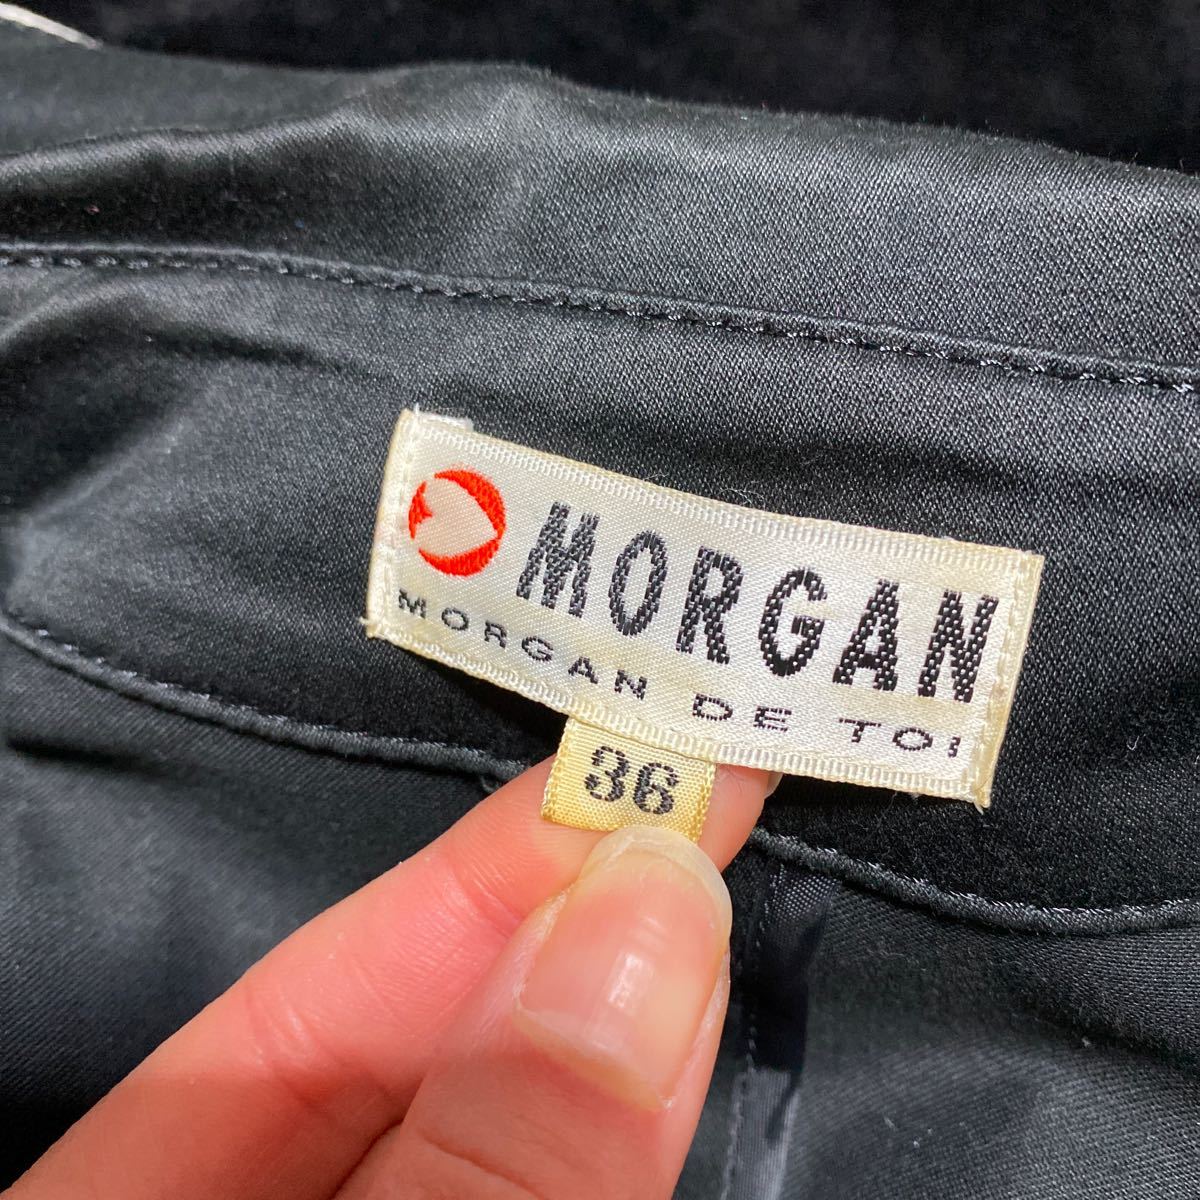 MORGAN Morgan женский тренчкот пальто to ключ трубчатая обводка черный чёрный весна пальто 36 внешний 